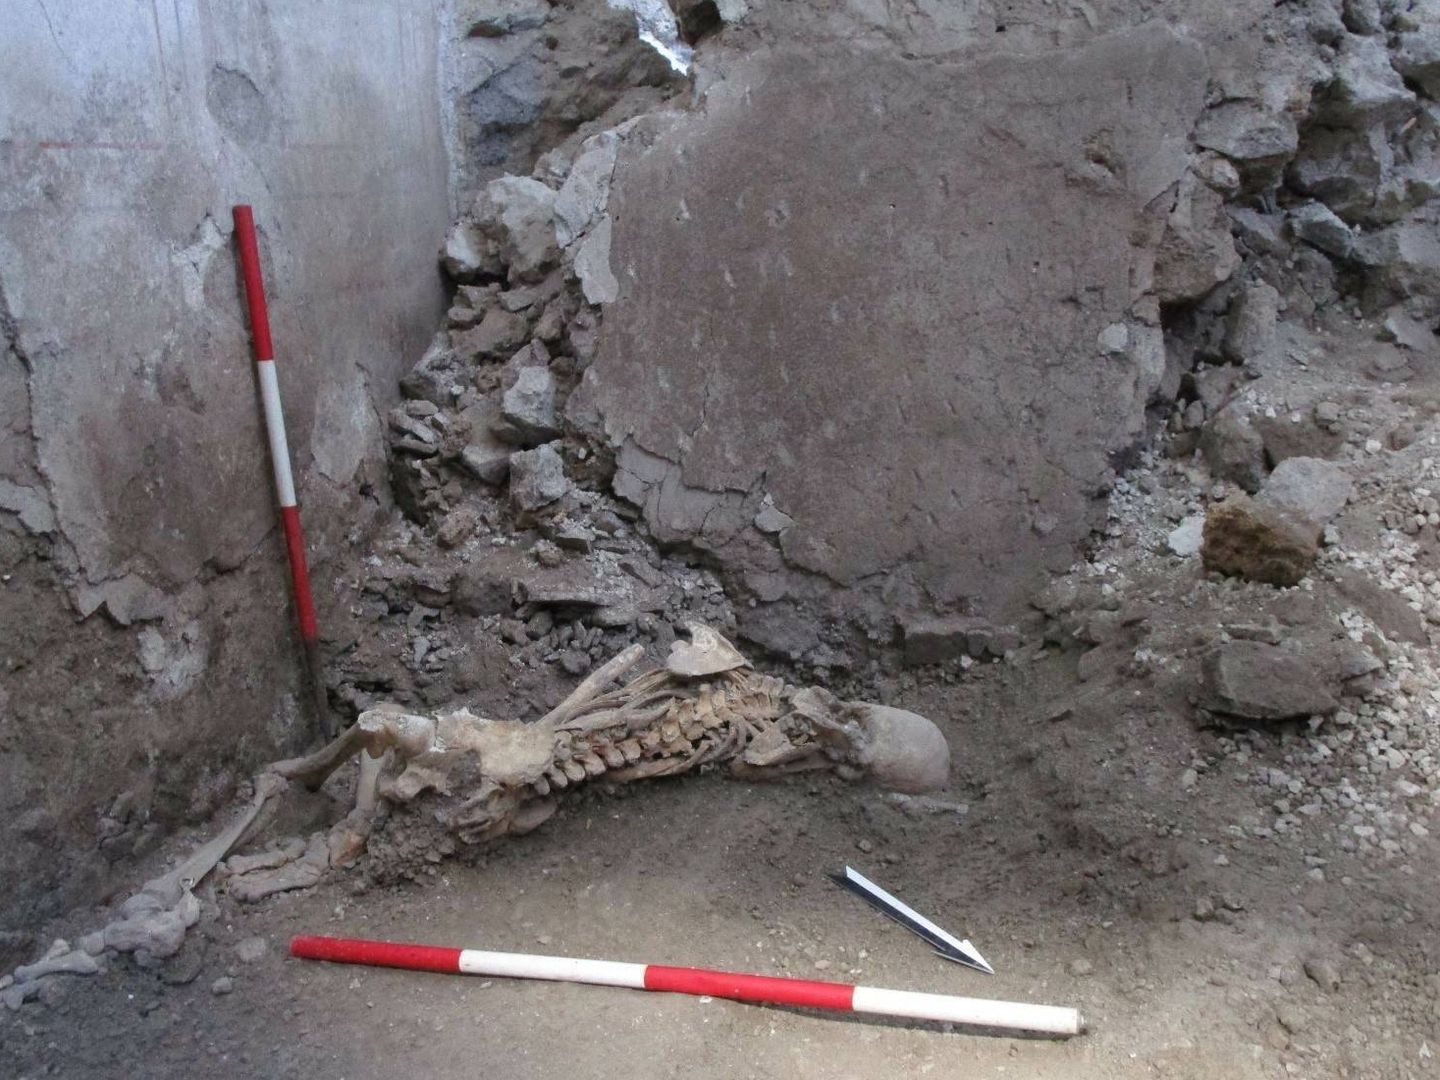 Esqueleto del 'individuo 1', un hombre de unos 50 años cuya posición sugiere que fue aplastado repentinamente por el derrumbe de un gran fragmento de pared. (Parque Arqueológico de Pompeya).